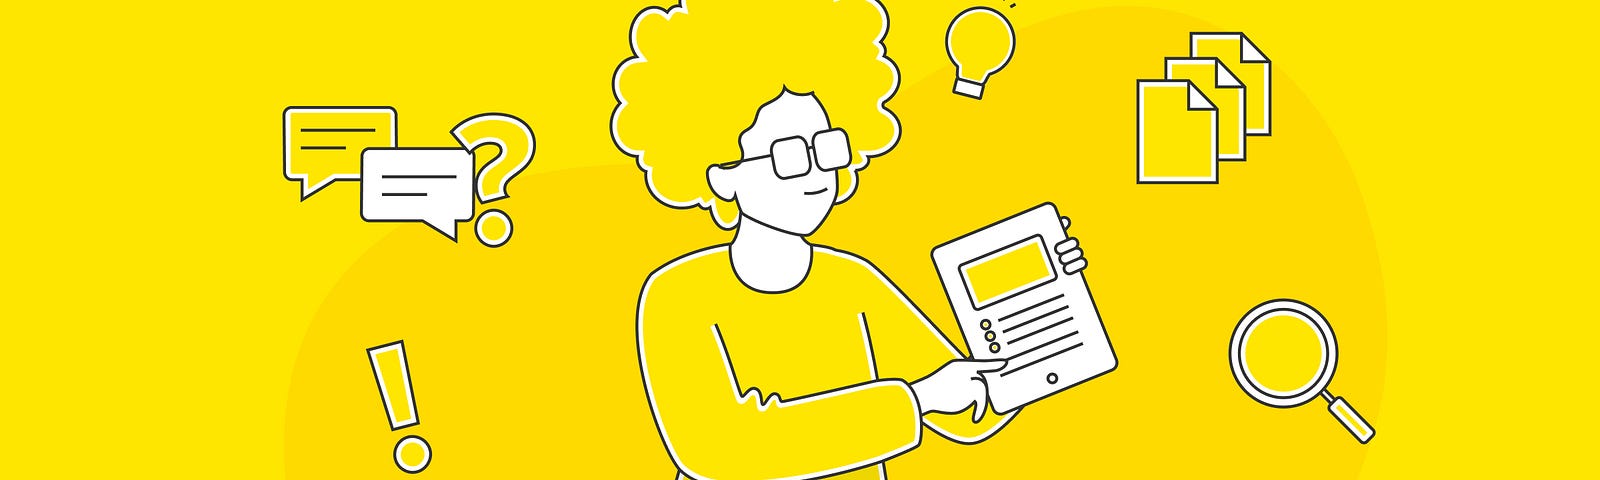 ilustración de una persona que muestra el contenido de una página en un fondo amarillo con ilustraciones de hojas y otros elementos ilustrativos